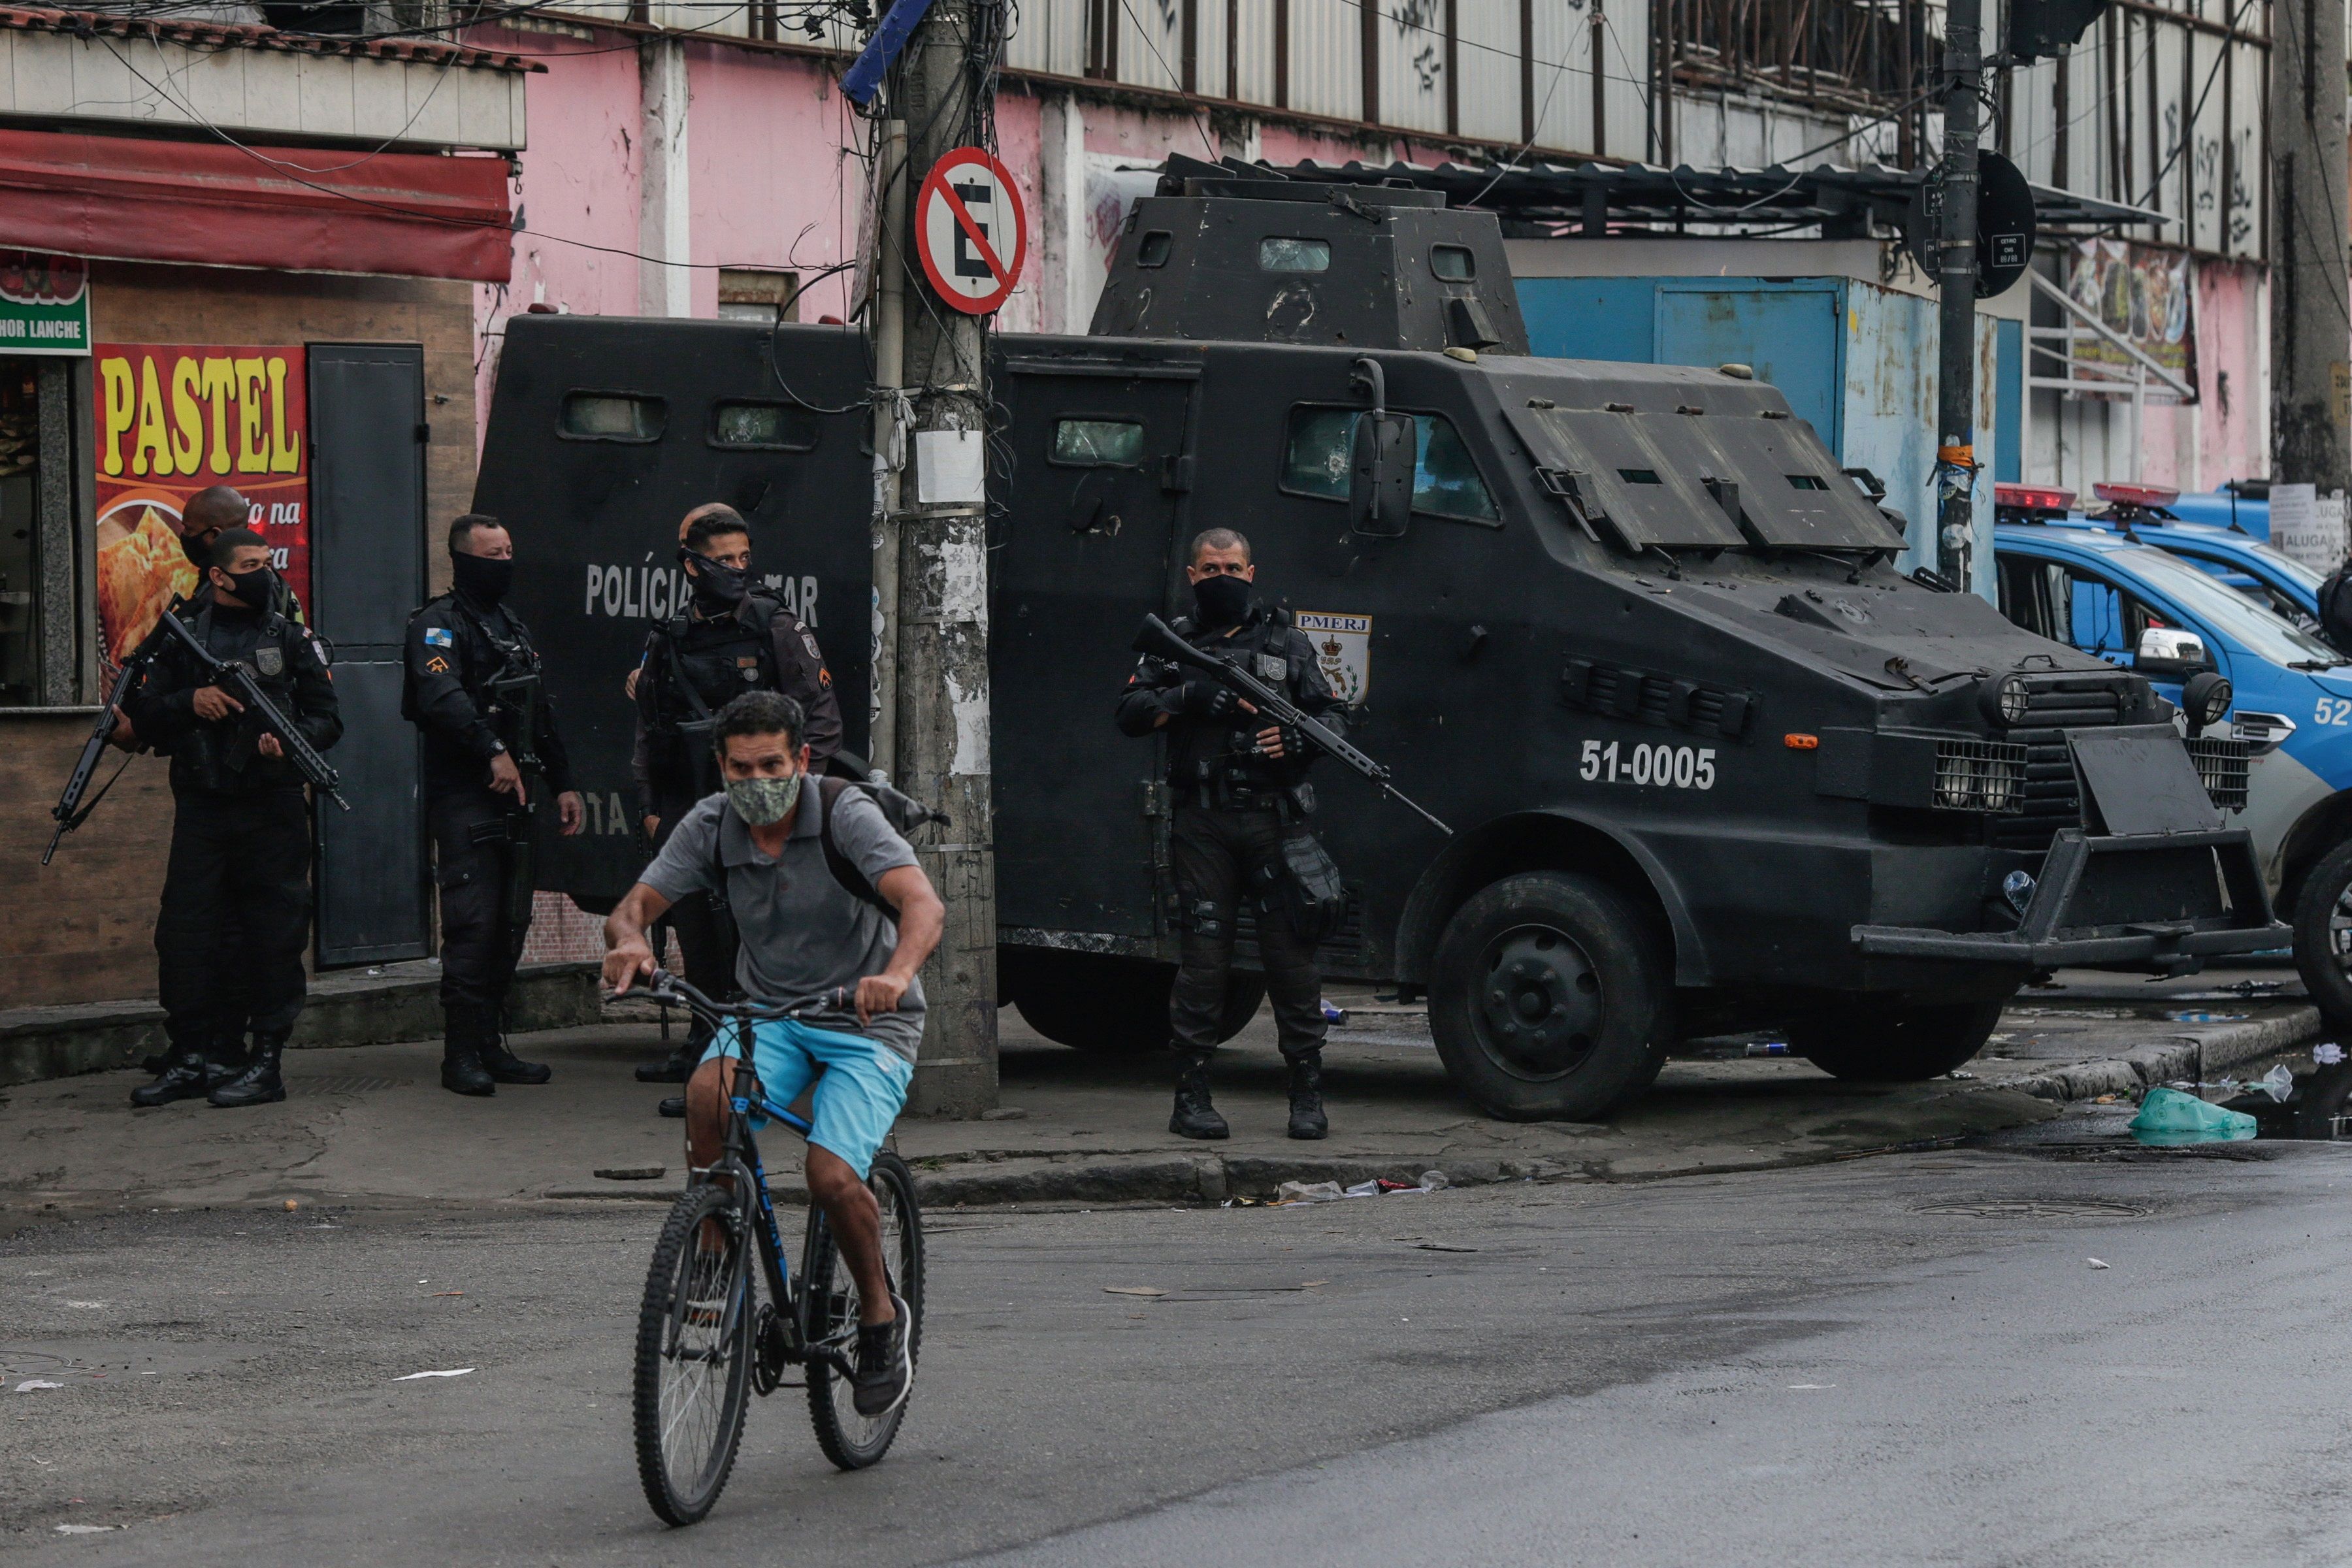 Un operativo contra presuntos narcotraficantes en las favelas de Río de Janeiro dejó al menos 28 muertos. (Foto Prensa Libre: EFE)